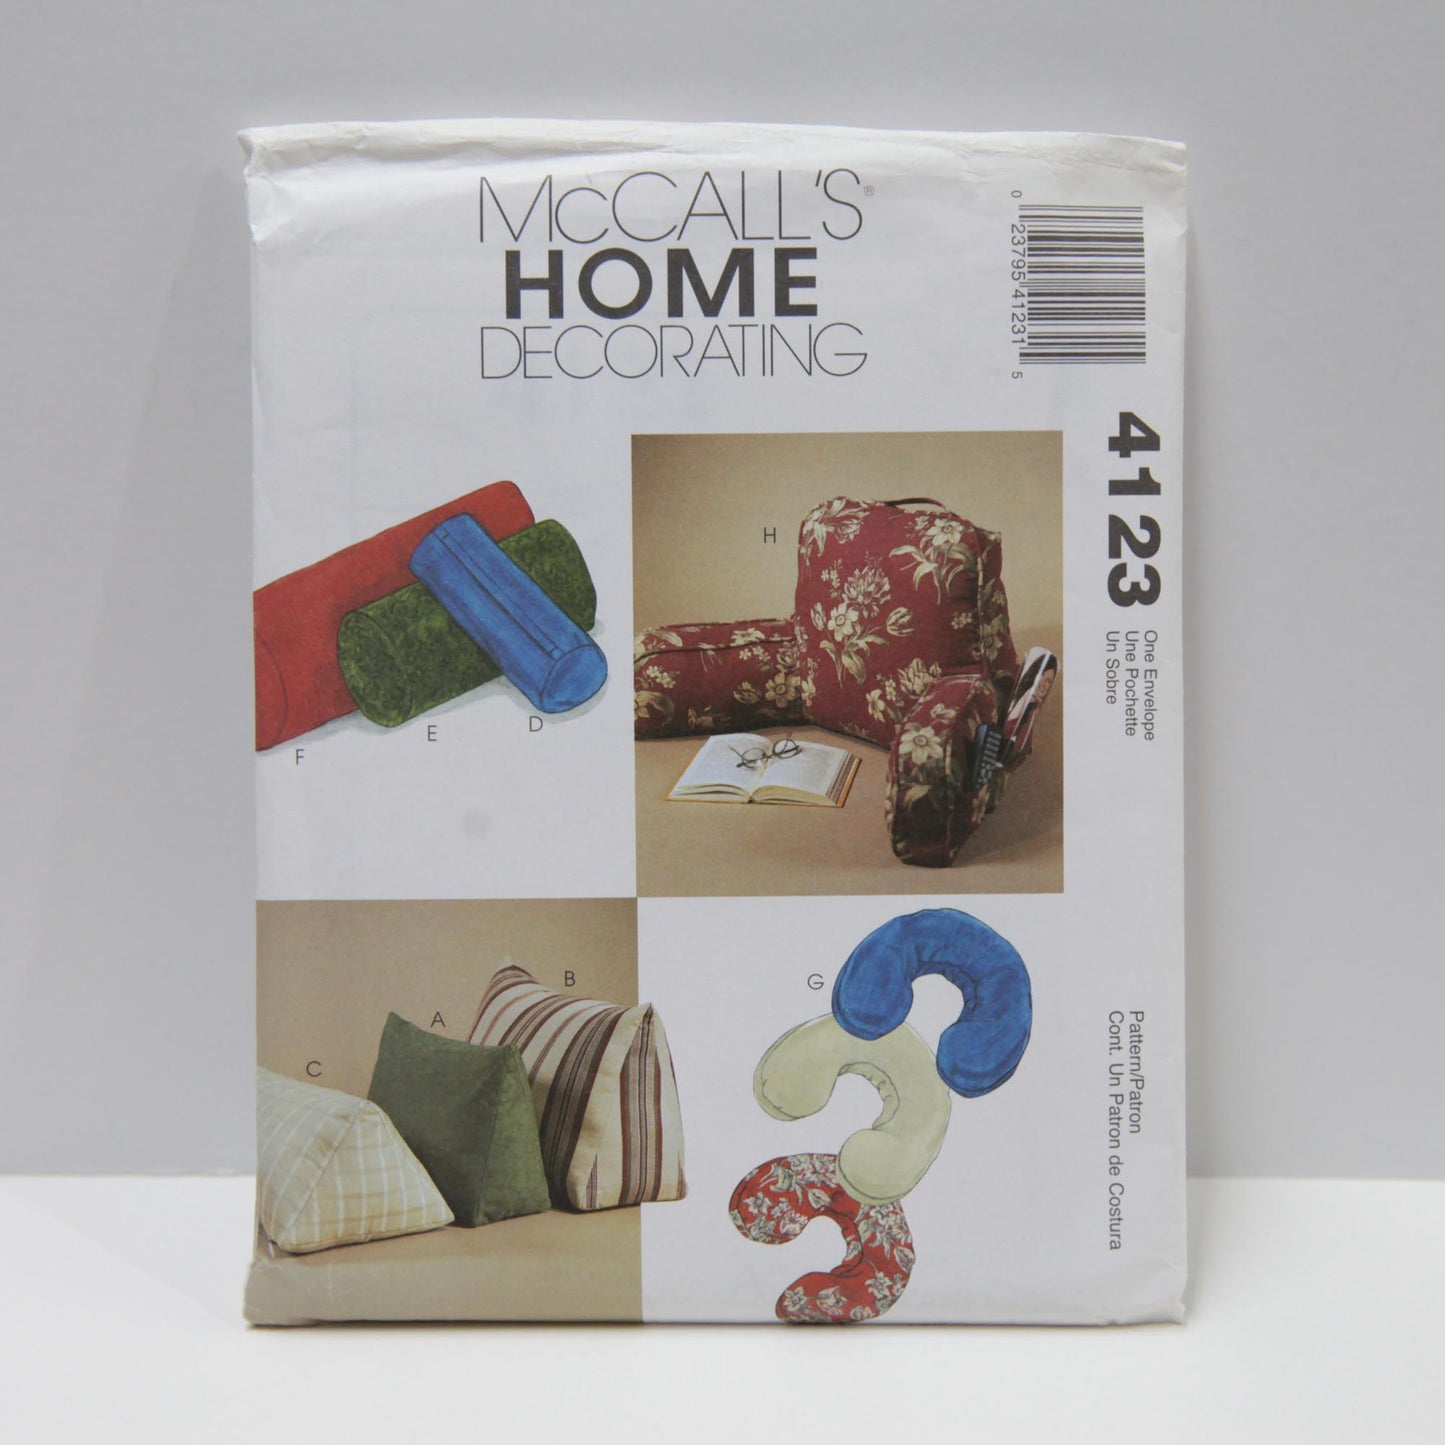 M4408 Home Decorating Essentials - Curtains